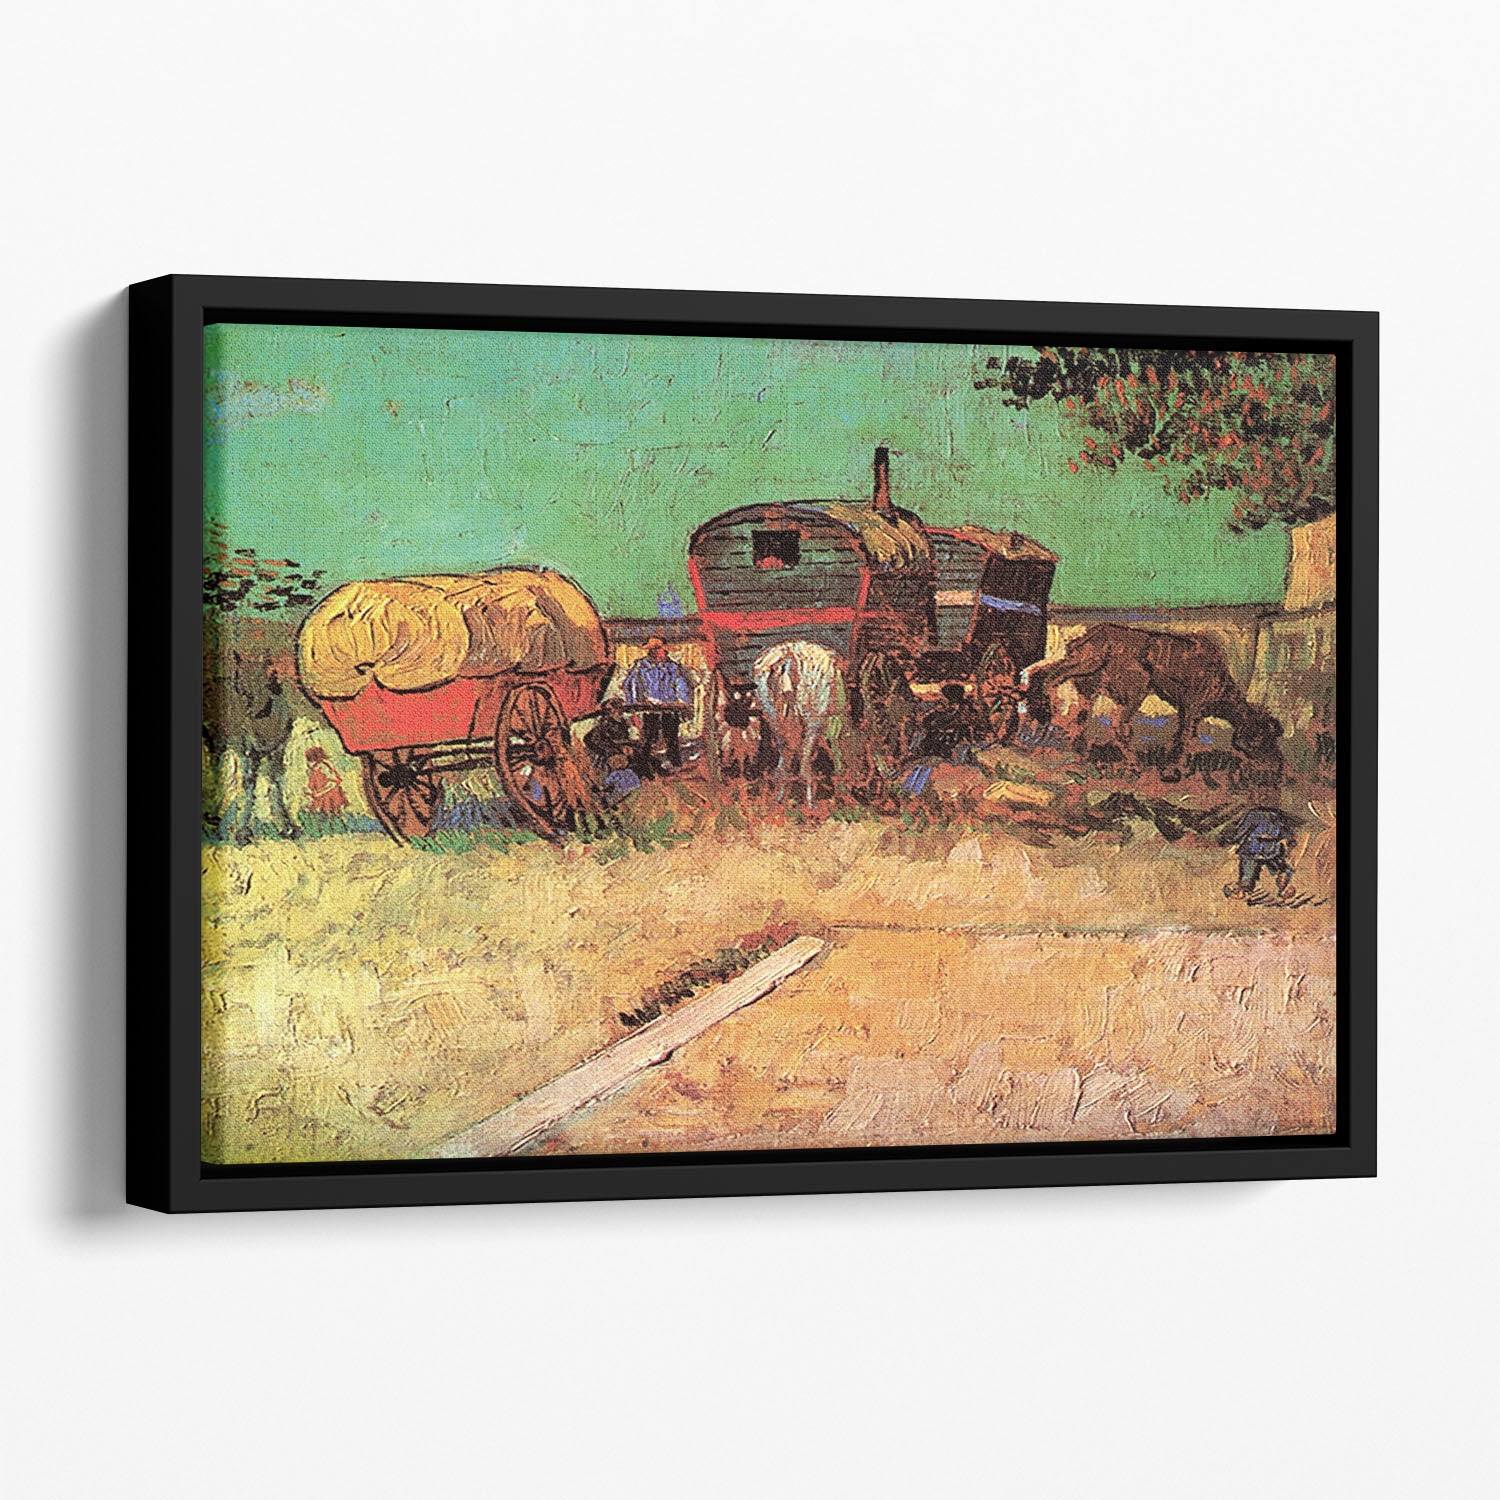 Encampment of Gypsies with Caravans by Van Gogh Floating Framed Canvas